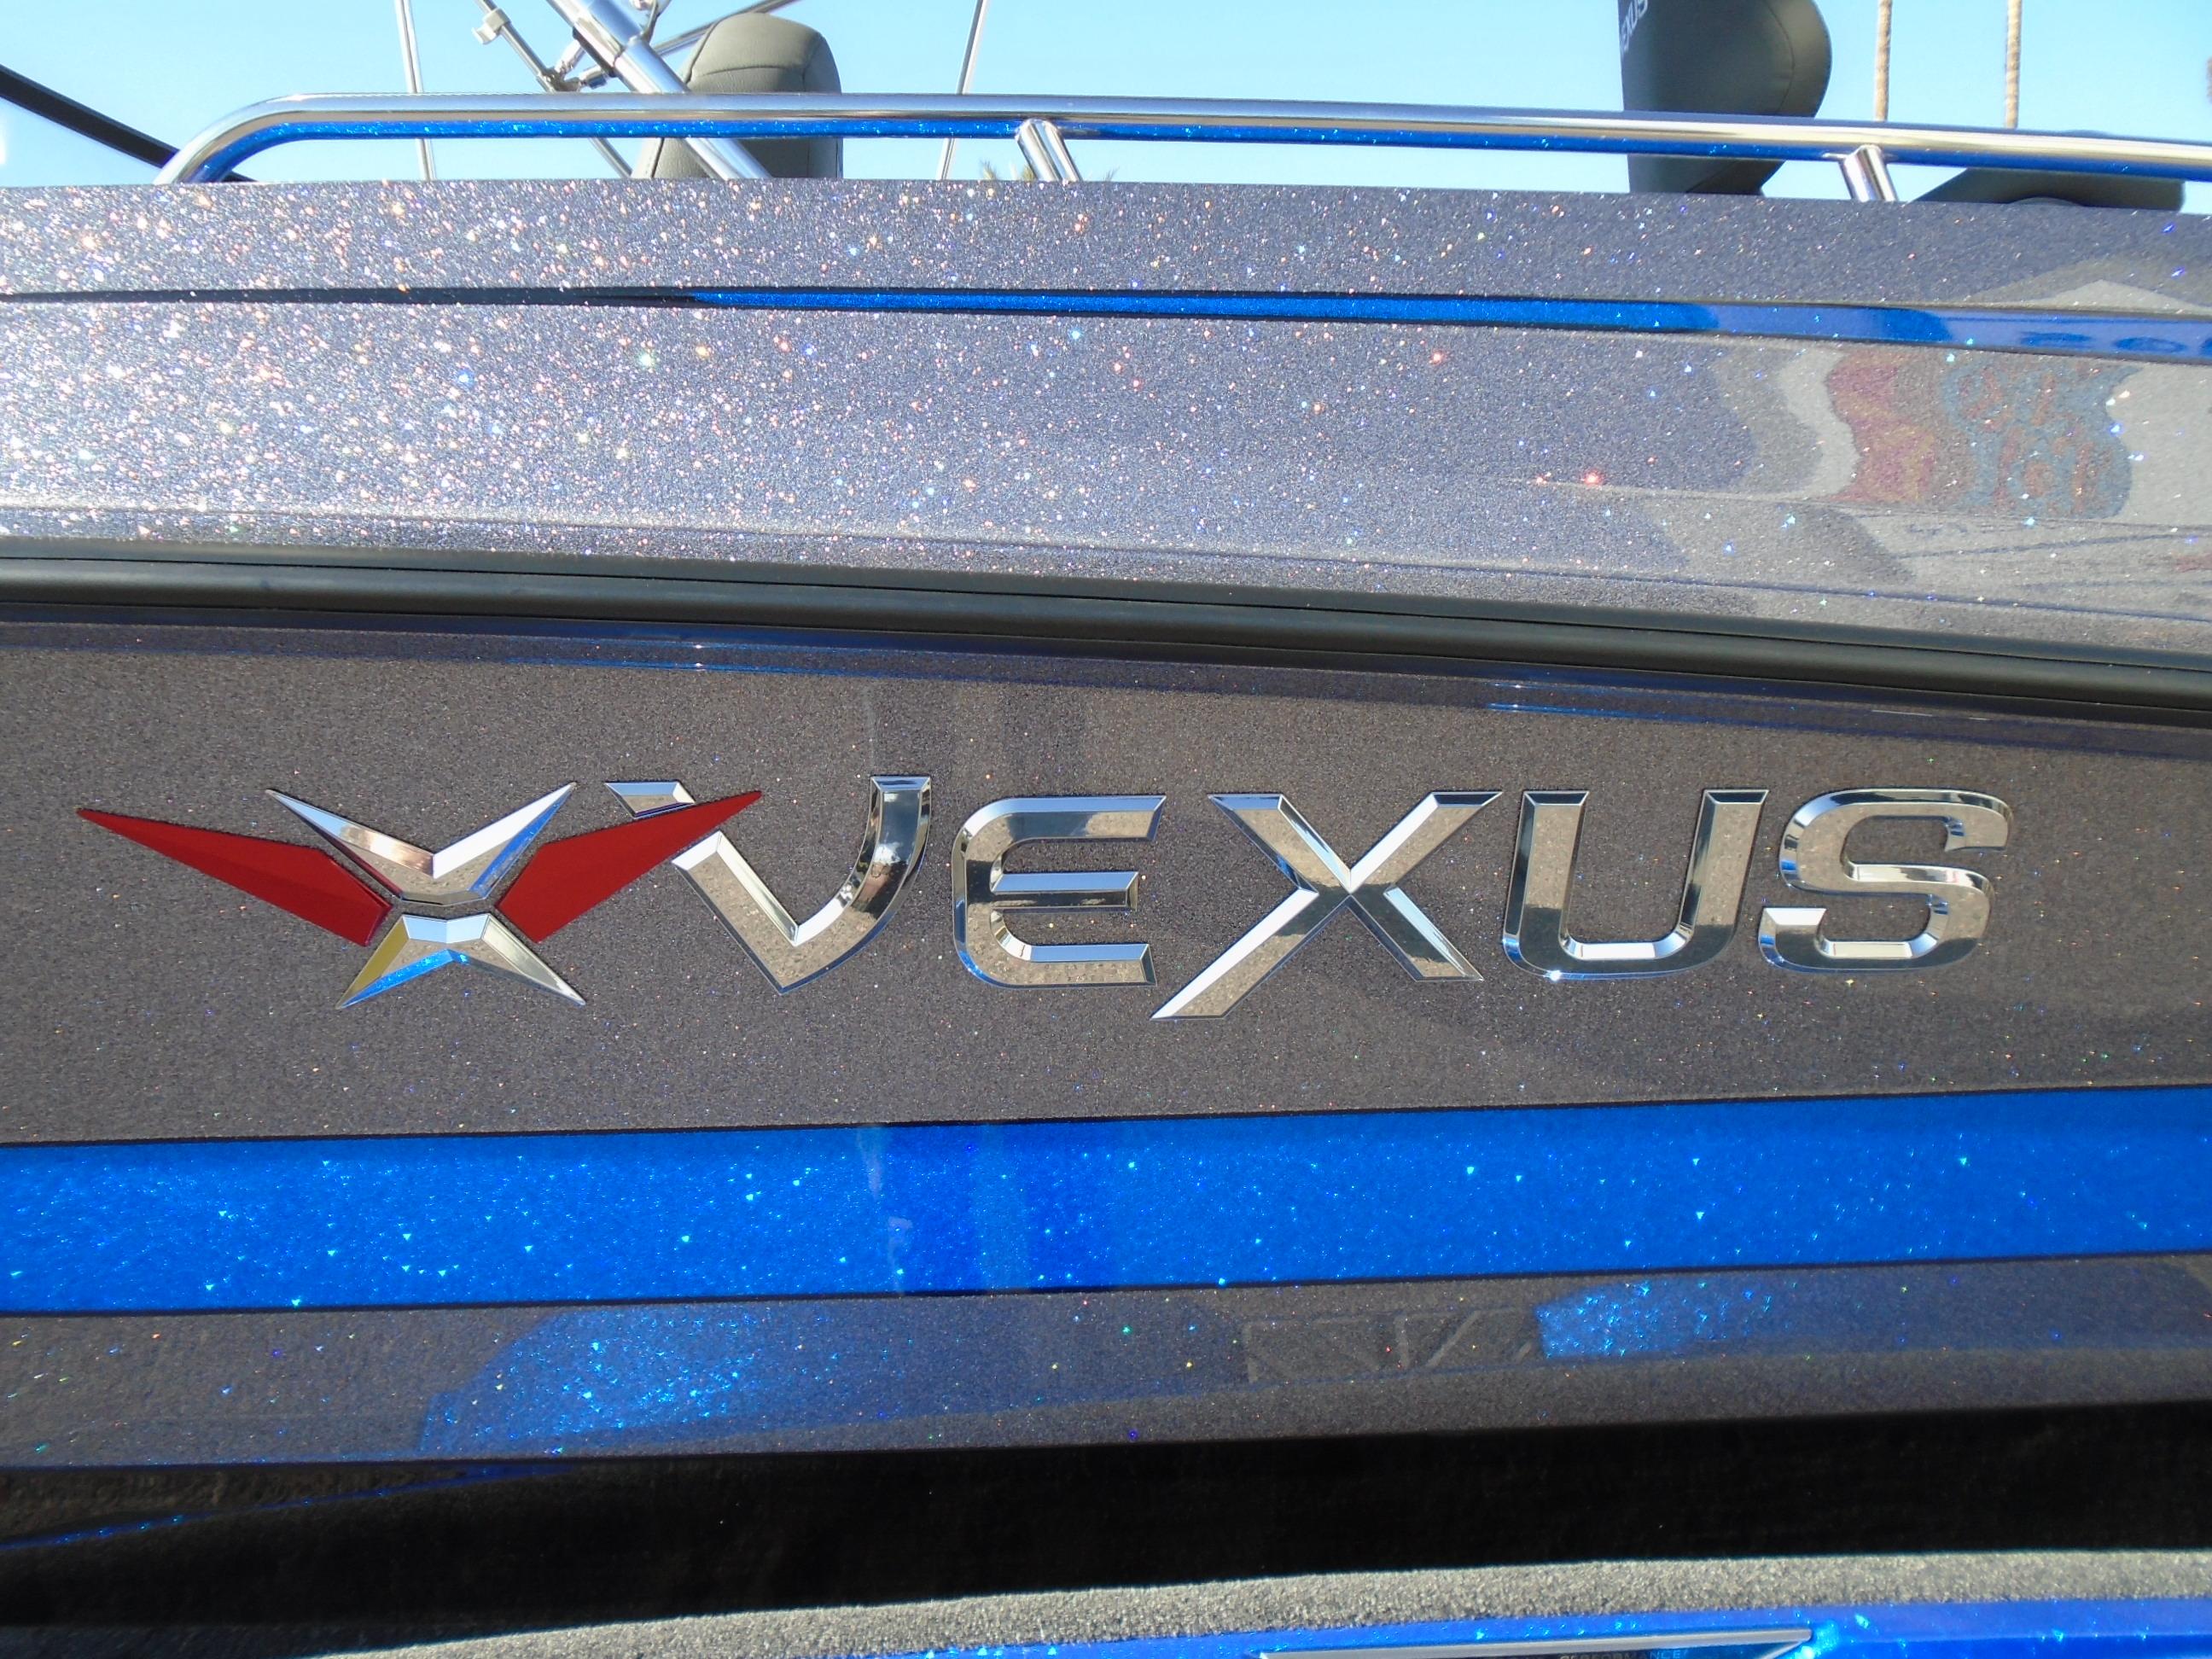 2024 Vexus DVX20S